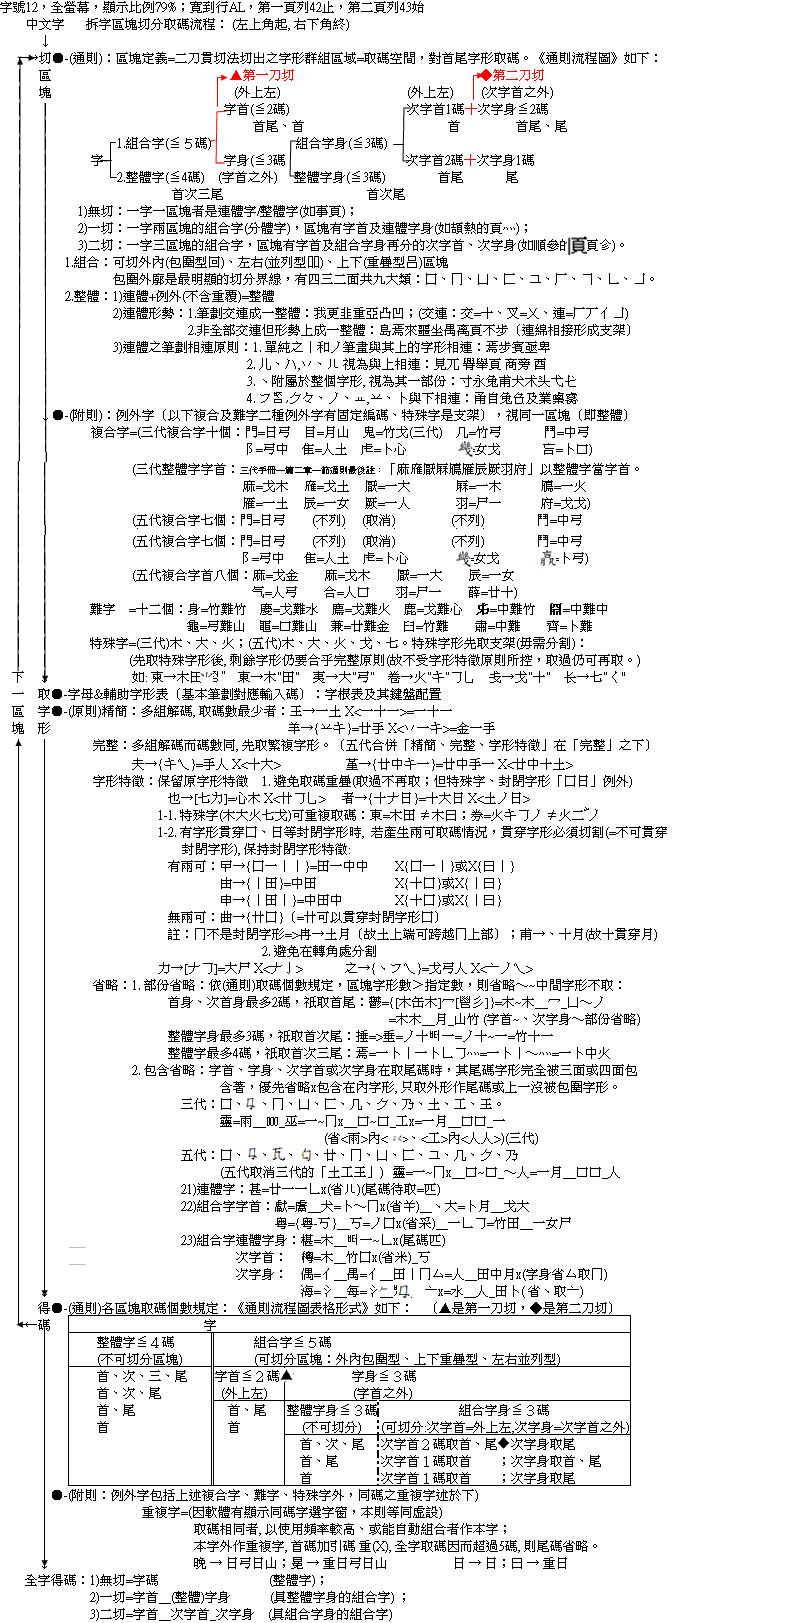 倉頡拆字取碼流程(三代&amp;五代).GIF